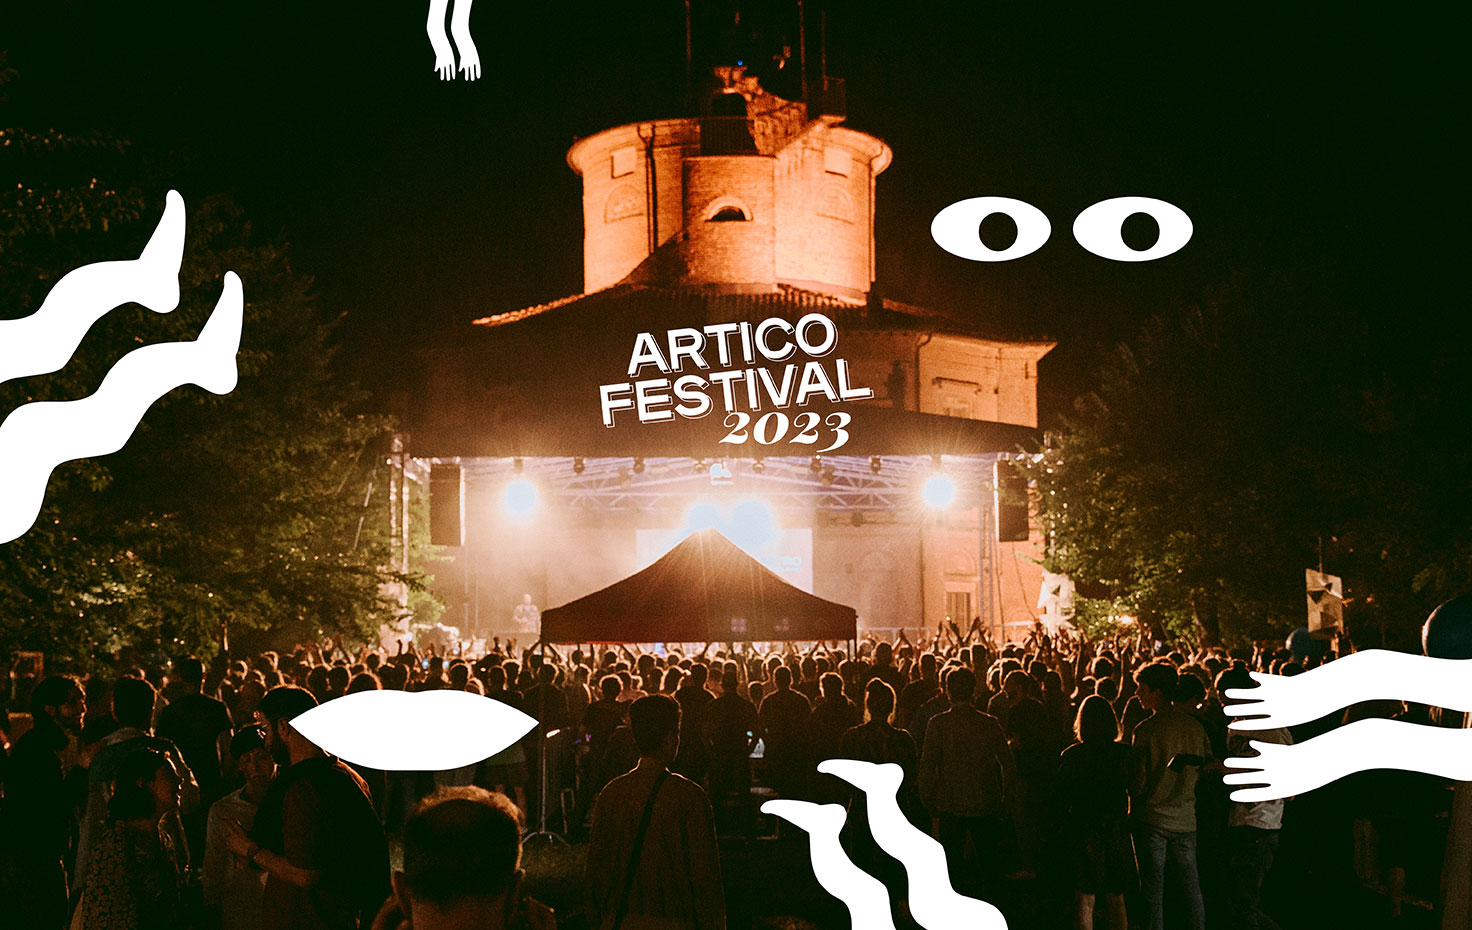 Artico Festival 2023